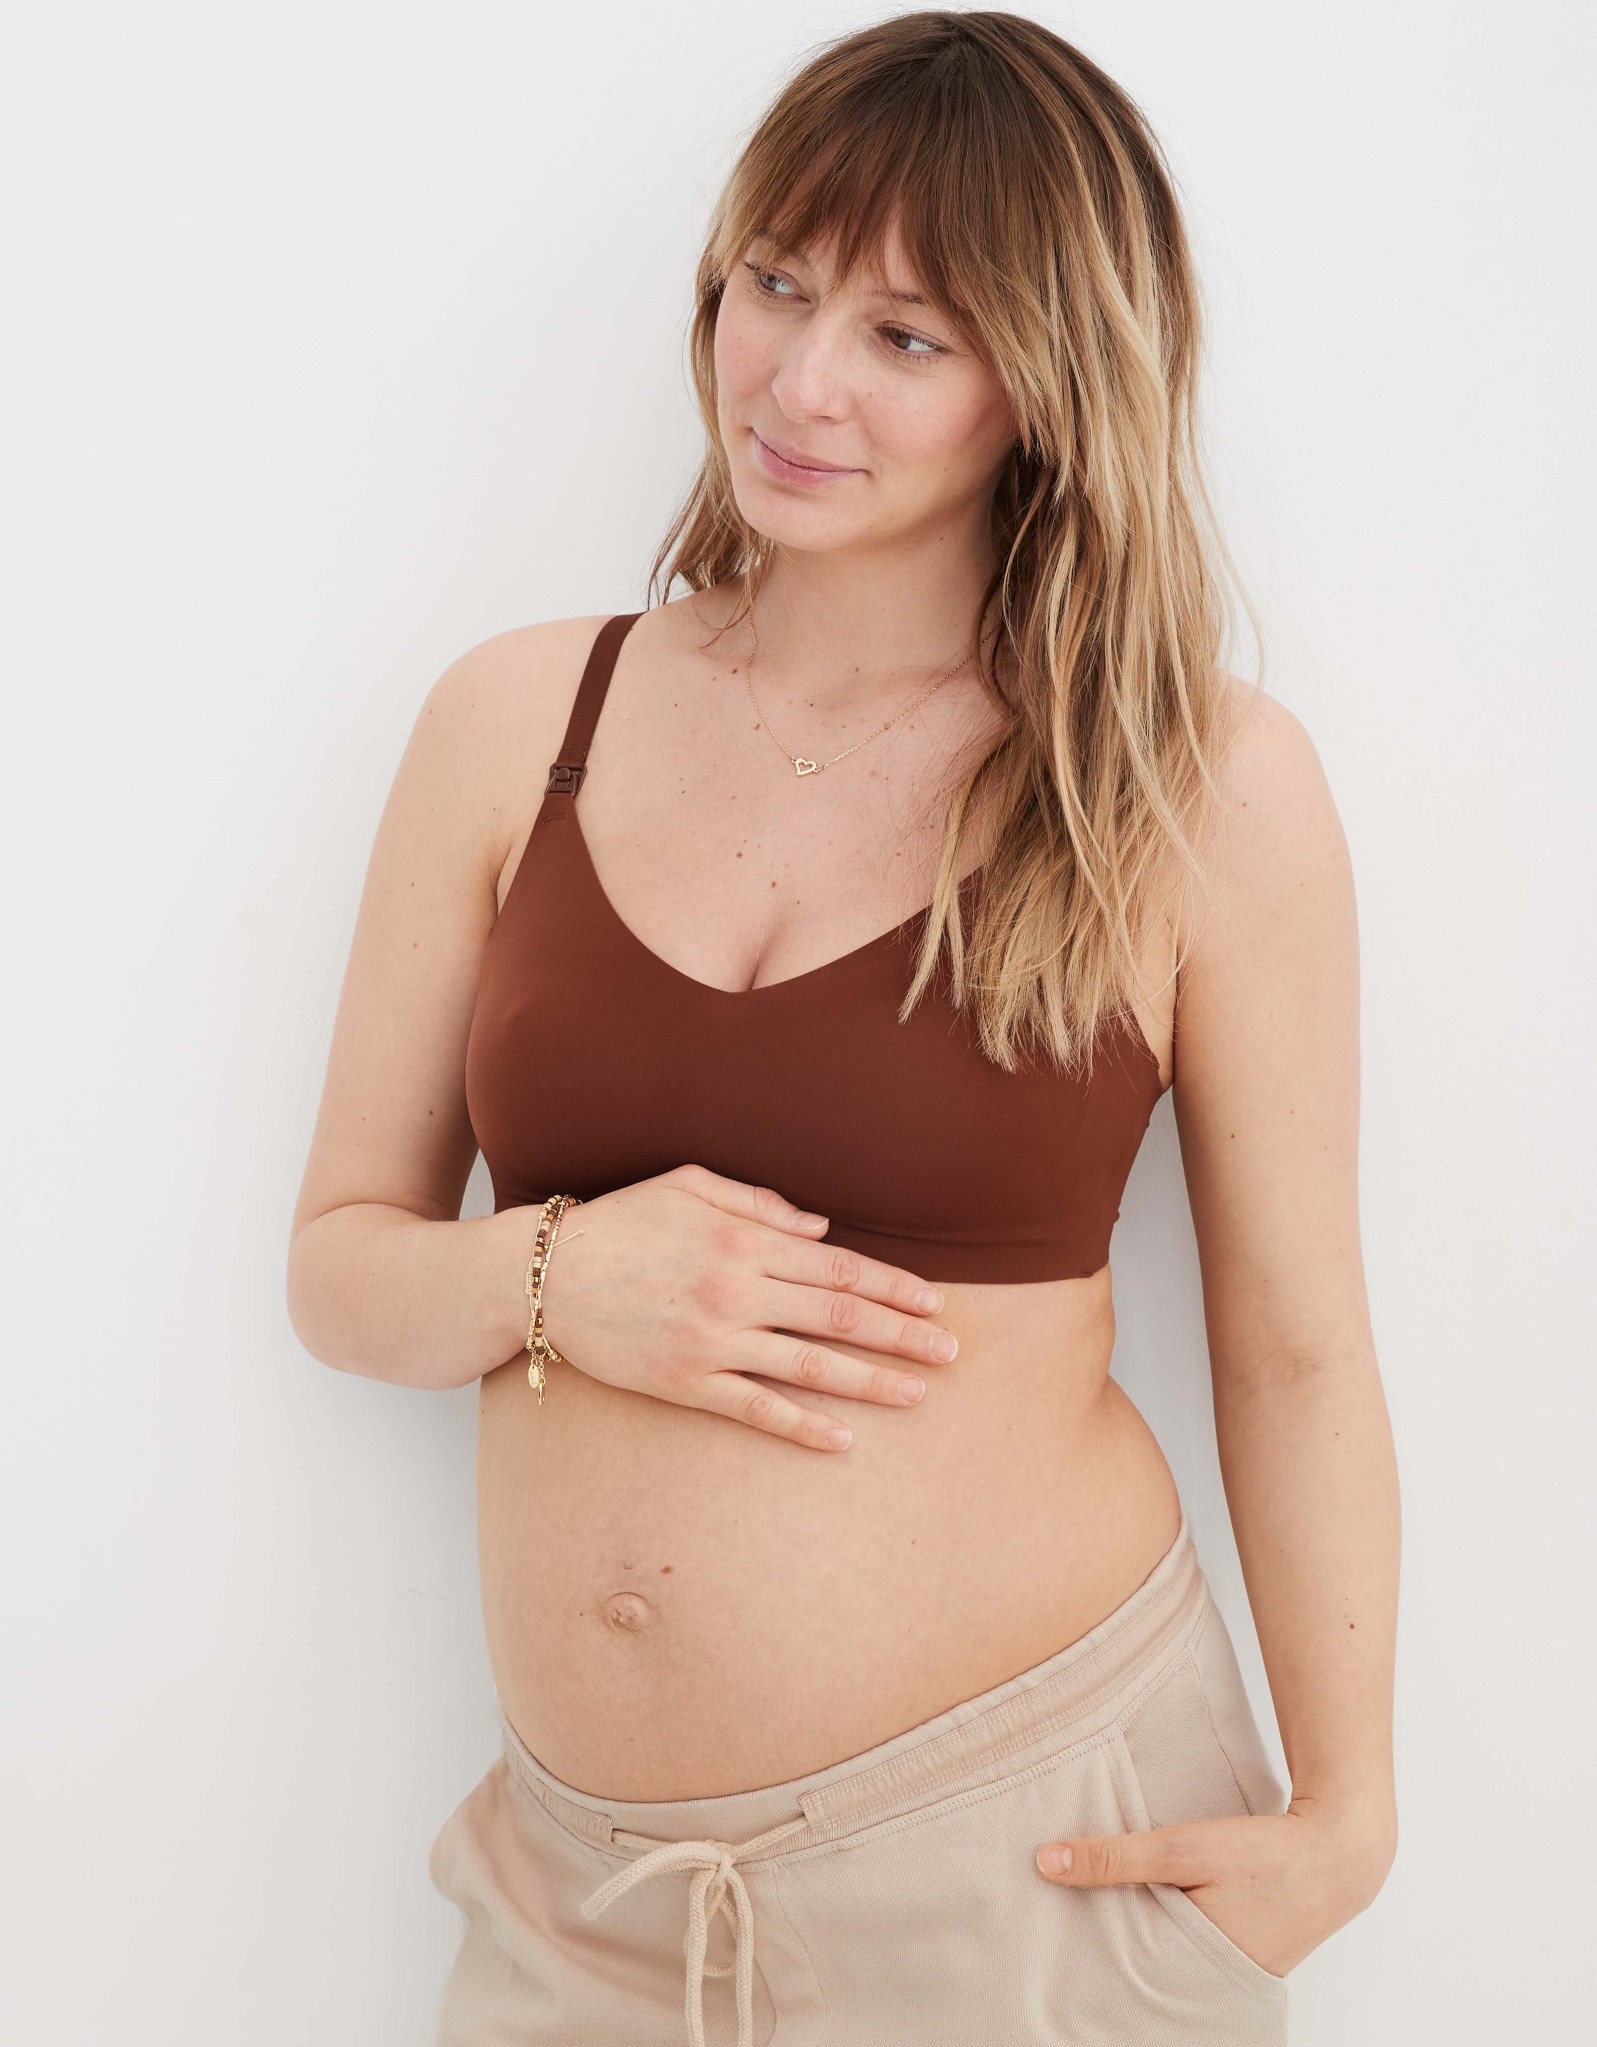 Women Nursing Bras Open The Underwear Of Pregnant Women In Front